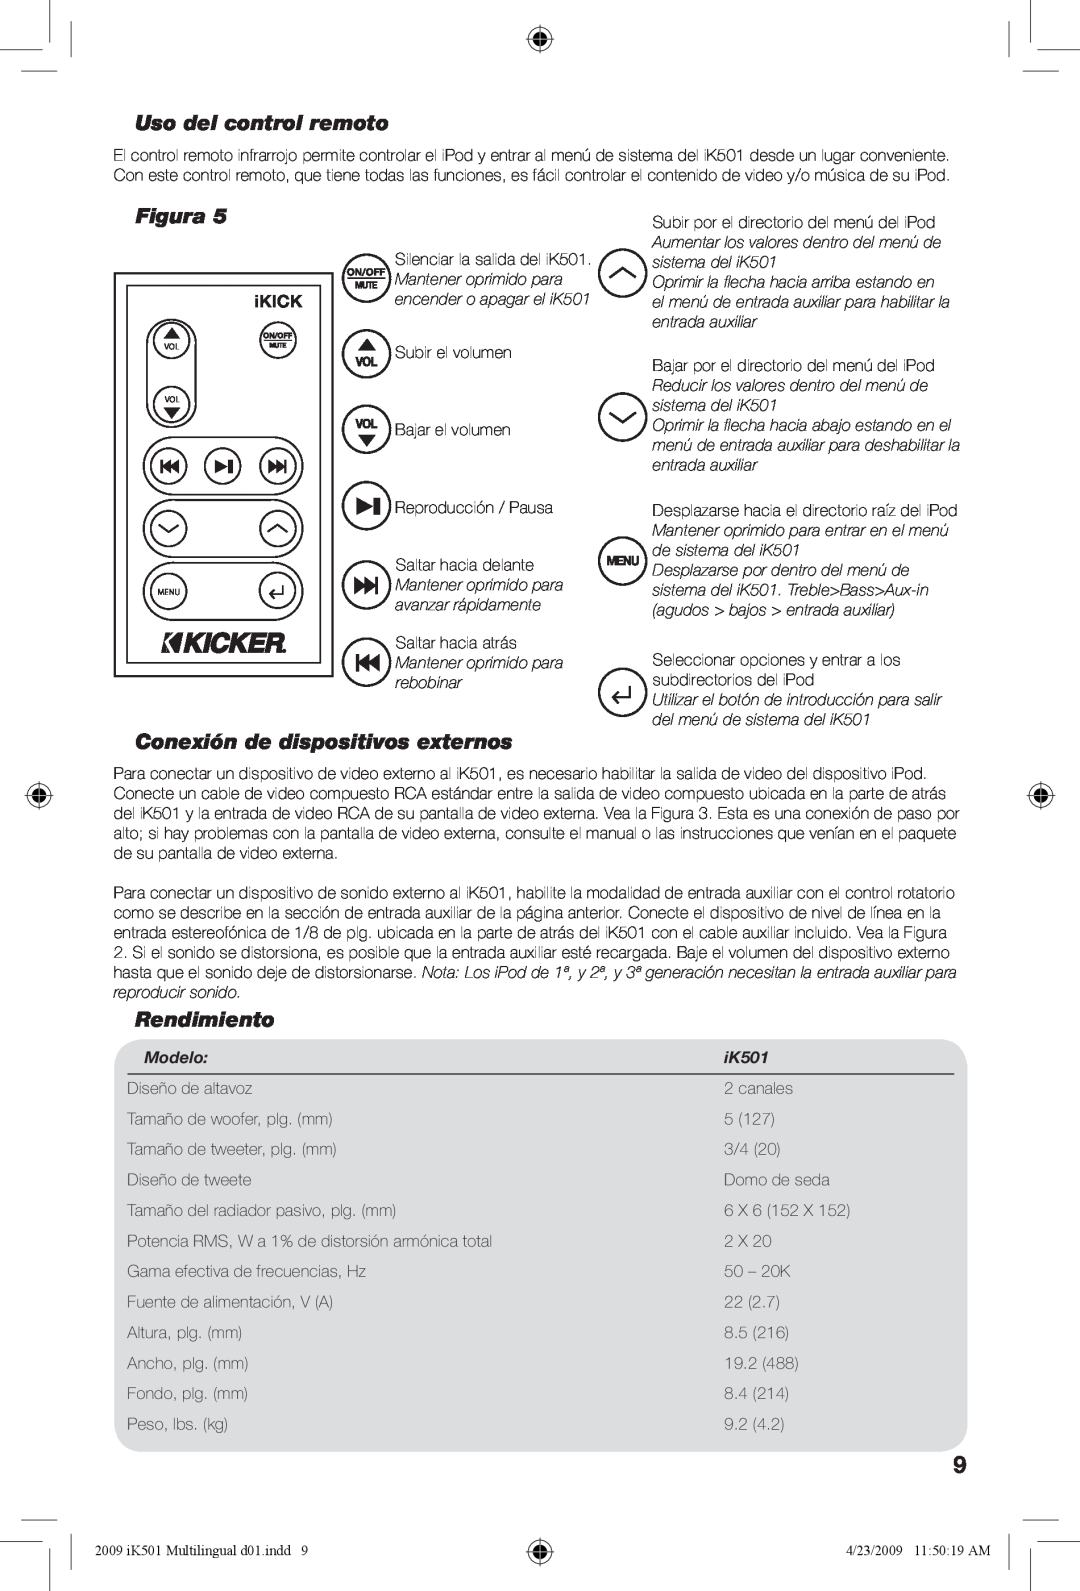 Kicker iK501 manual Uso del control remoto, Conexión de dispositivos externos, Rendimiento, iKICK, Modelo, Figura 